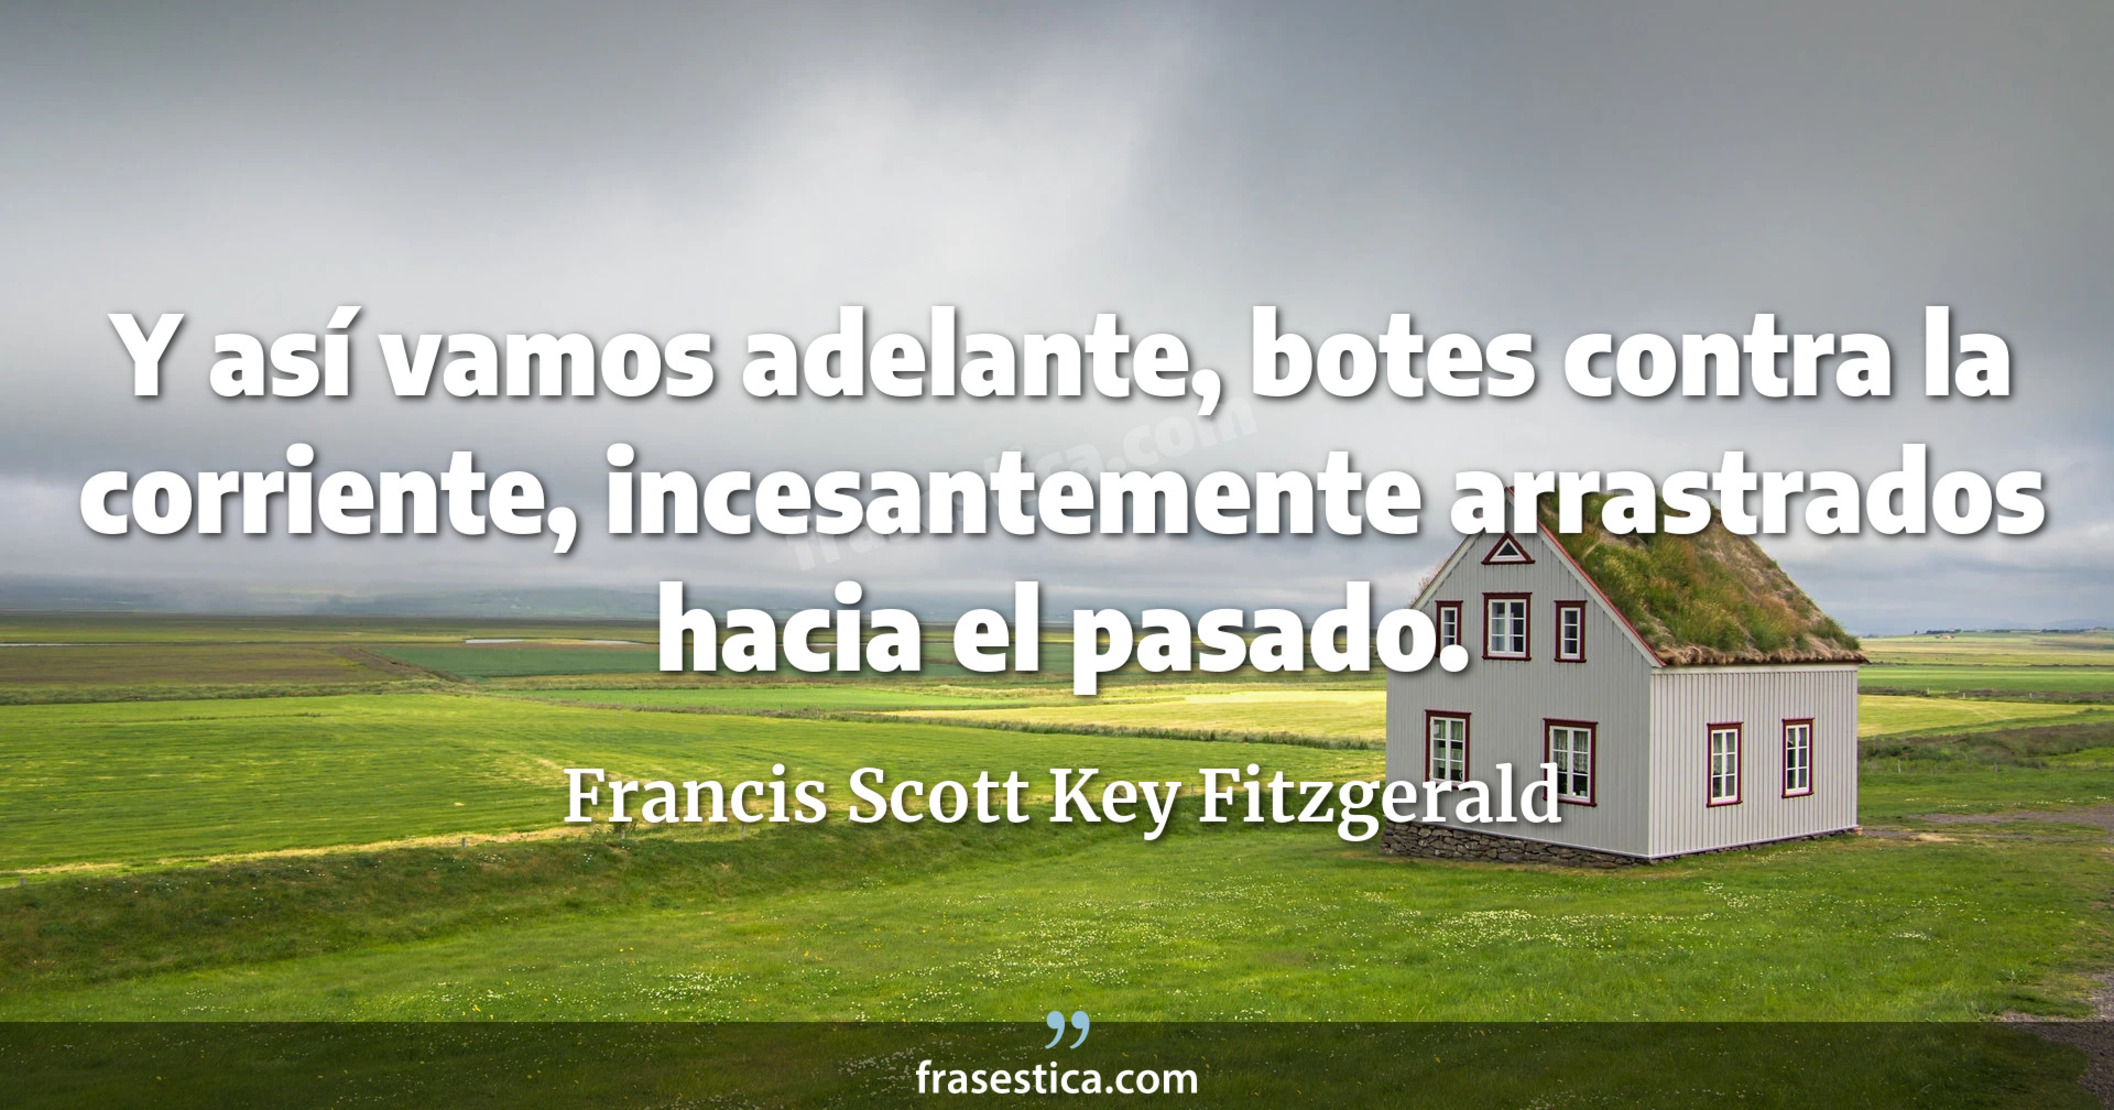 Y así vamos adelante, botes contra la corriente, incesantemente arrastrados hacia el pasado. - Francis Scott Key Fitzgerald